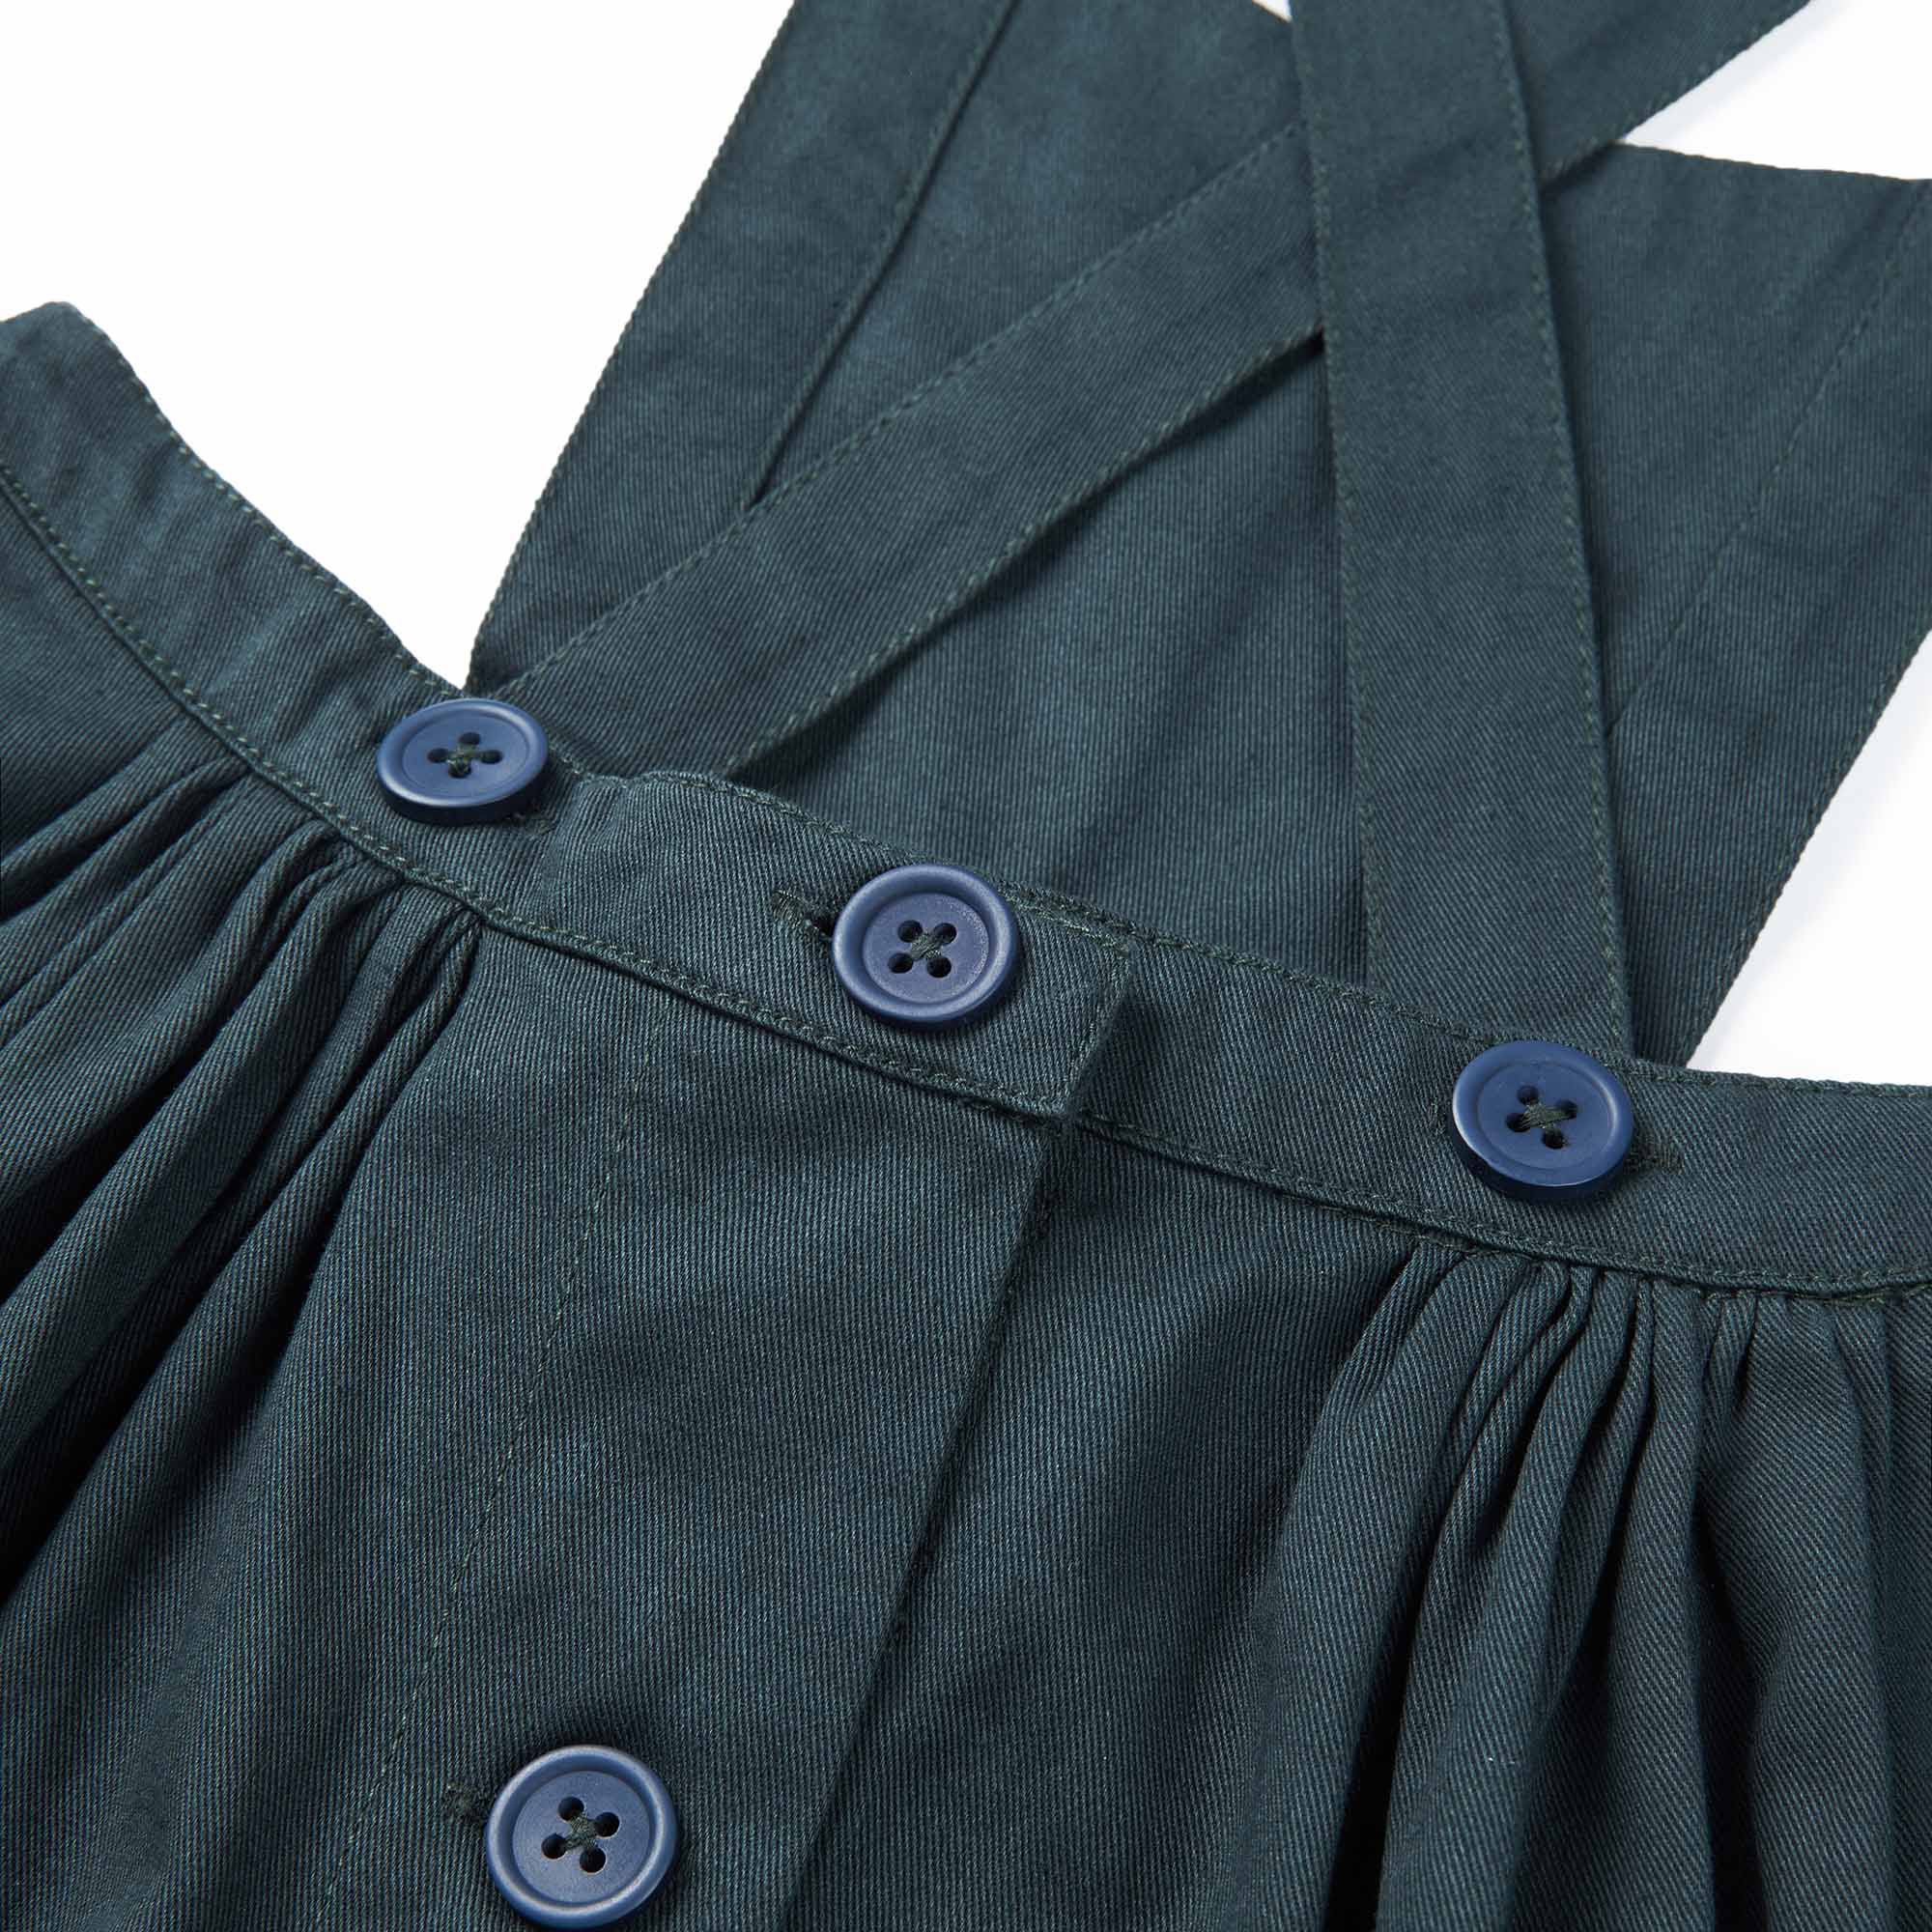 Girls Dark Grey Strap Cotton Skirt